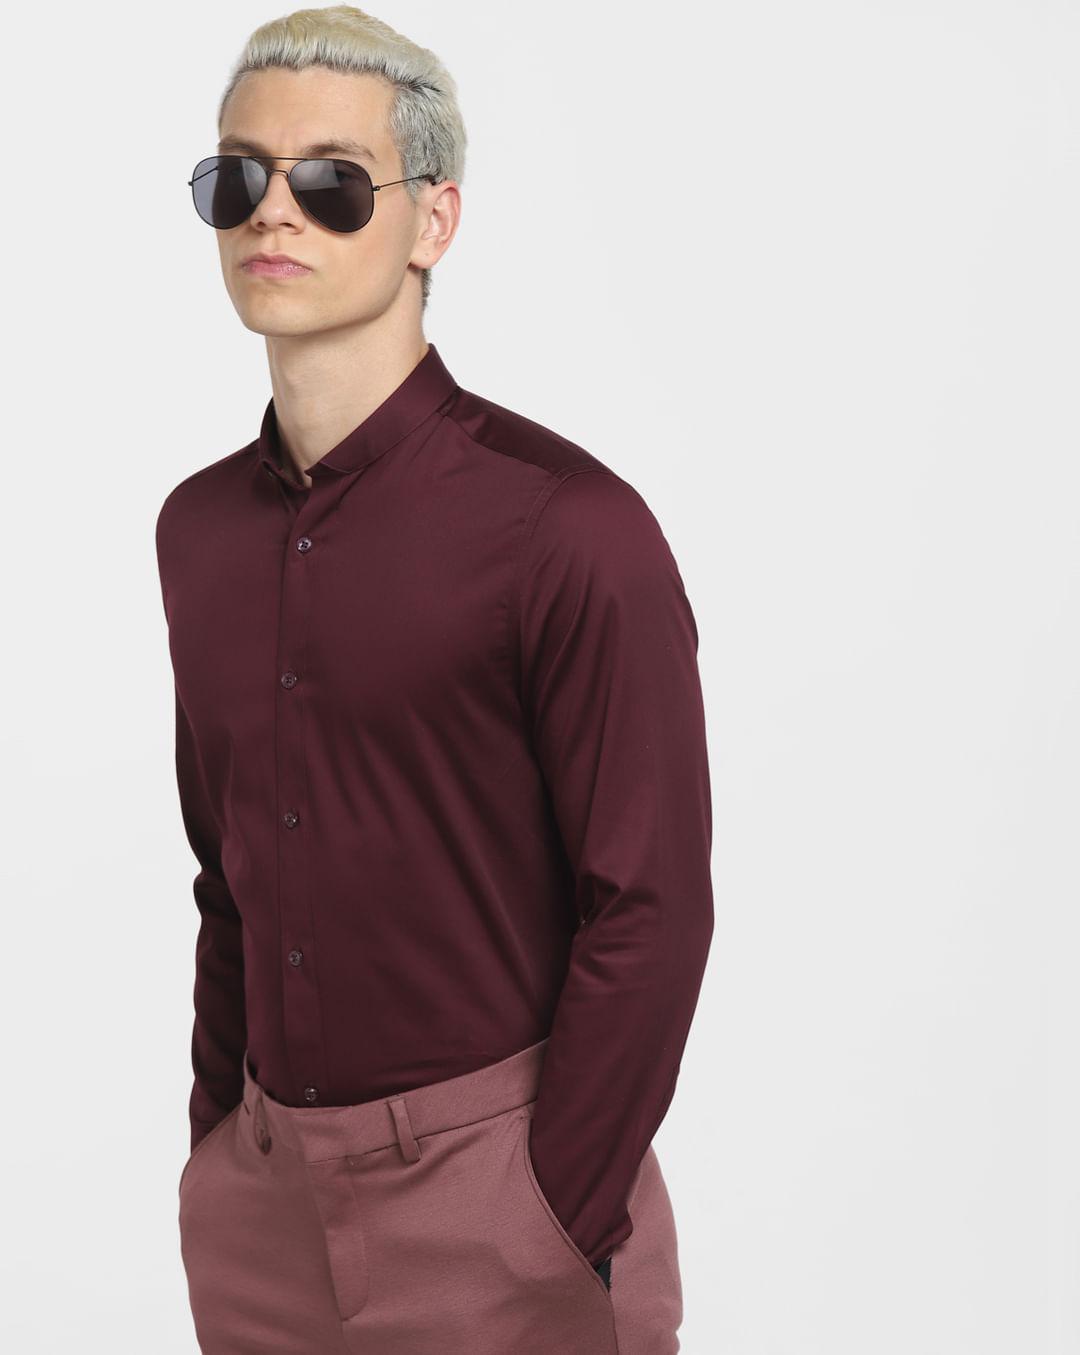 burgundy full sleeves shirt